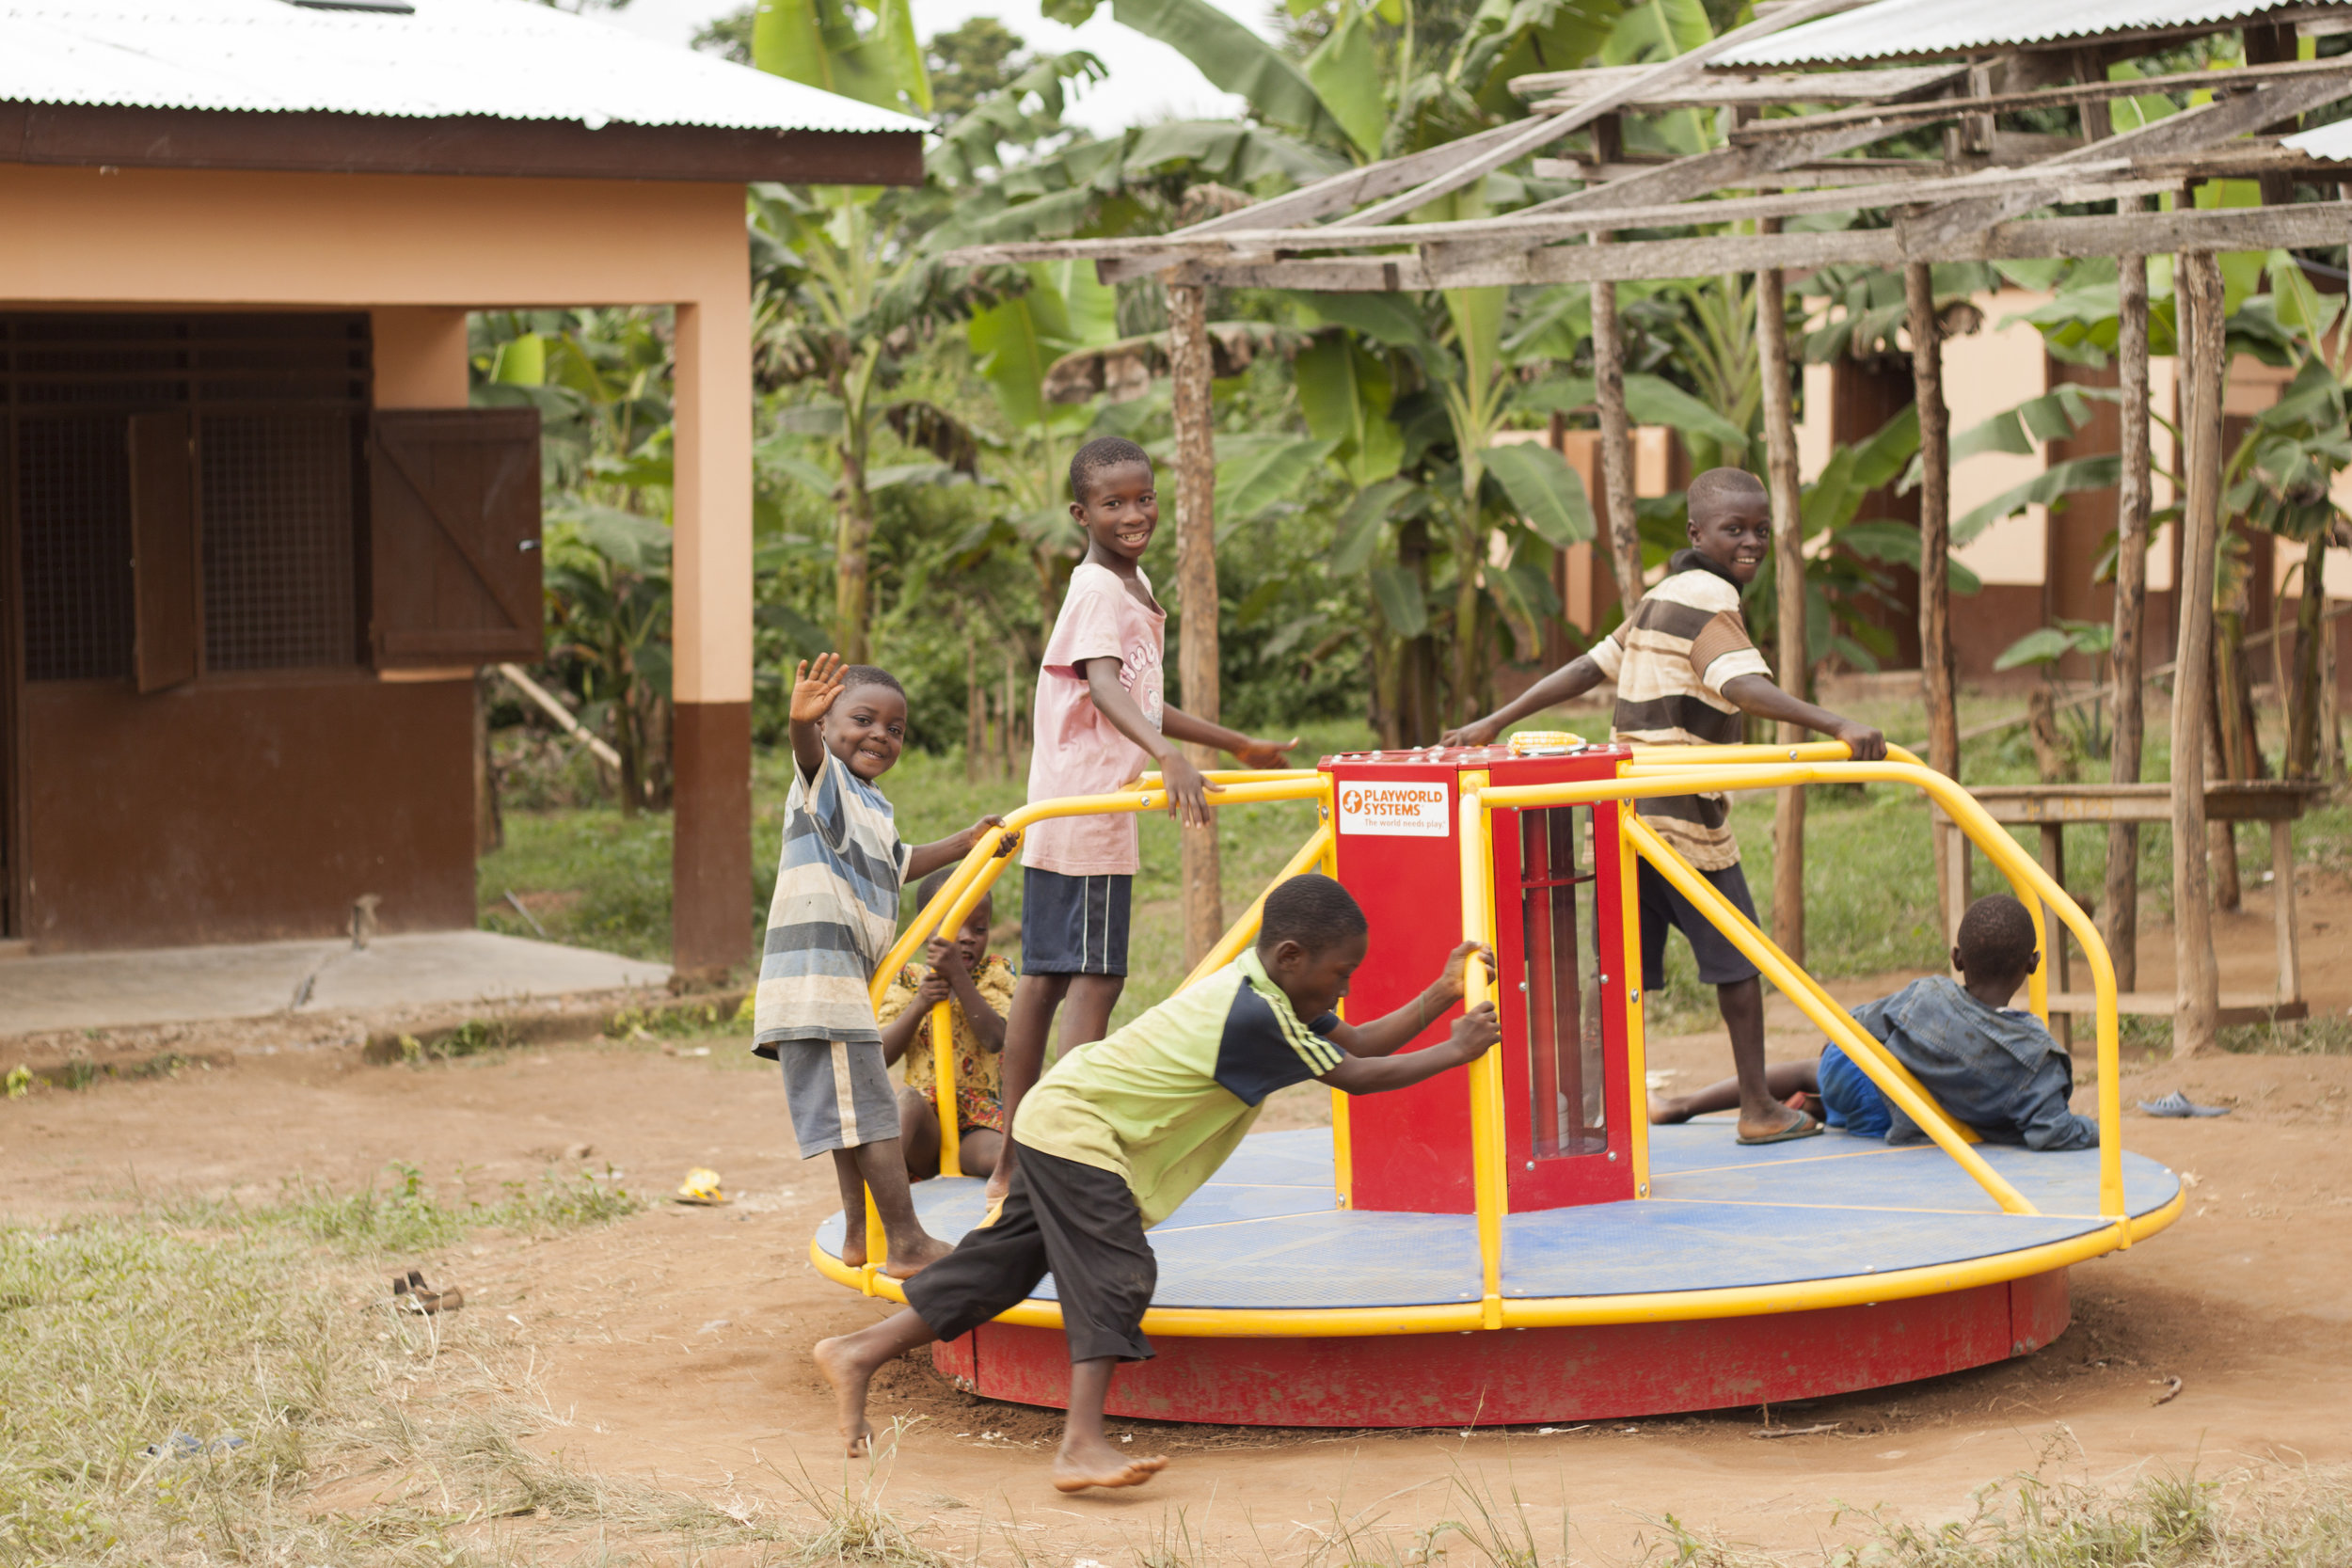 Merry-go-round at Fatwa Kosie